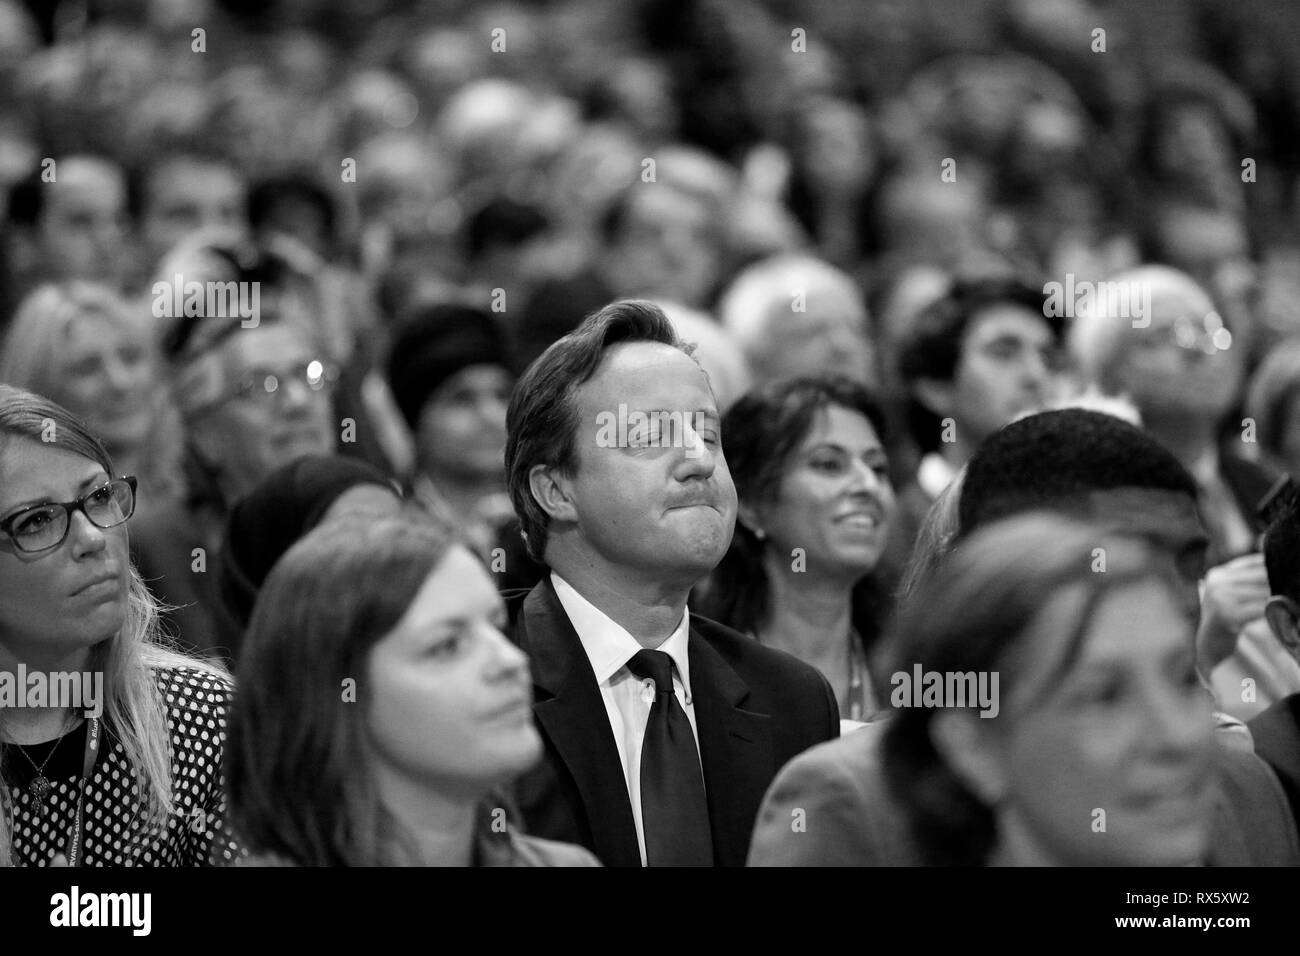 Premierminister David Cameron auf dem Parteitag der Konservativen Partei in Birmingham am 30. Sep 2014. Stockfoto